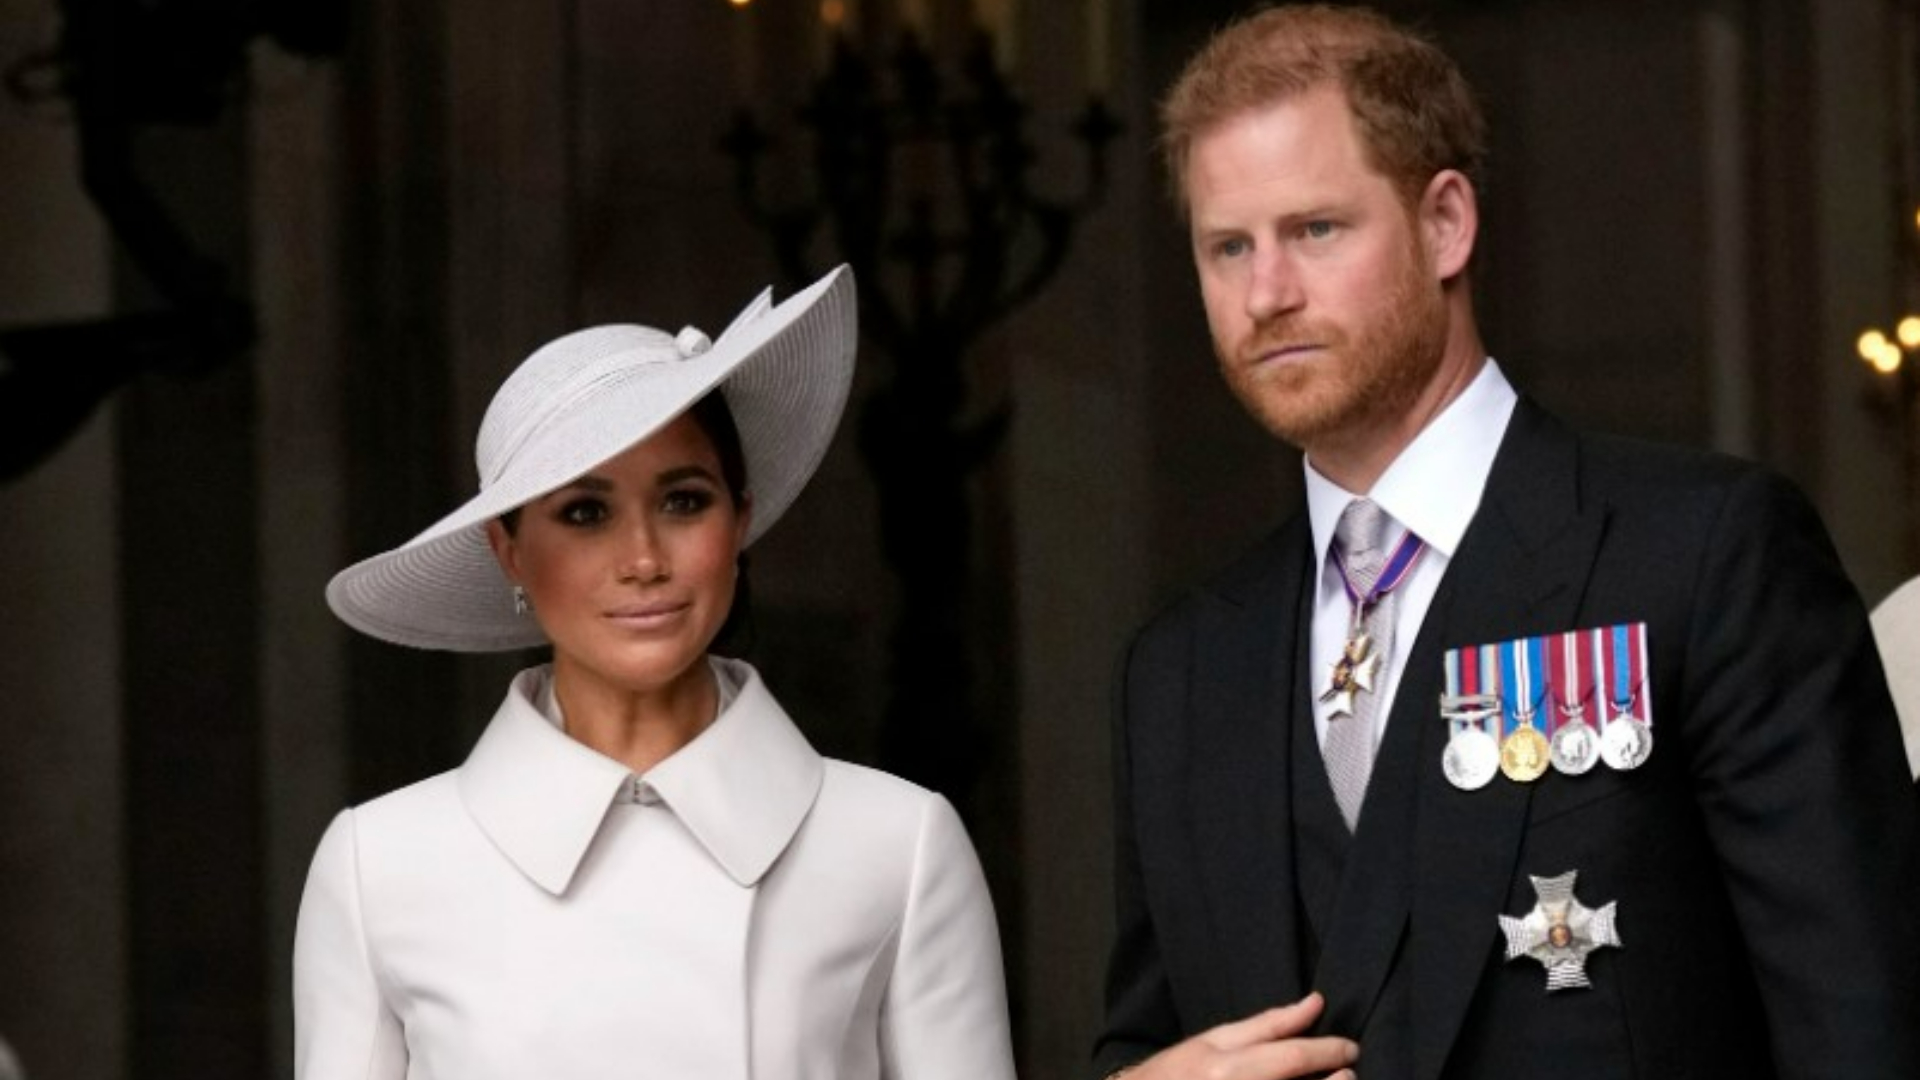 El matrimonio ha estado envuelto en escándalos desde que decidieron dejar a la familia real sin perder sus títulos. (Foto AP/Matt Dunham, Pool)